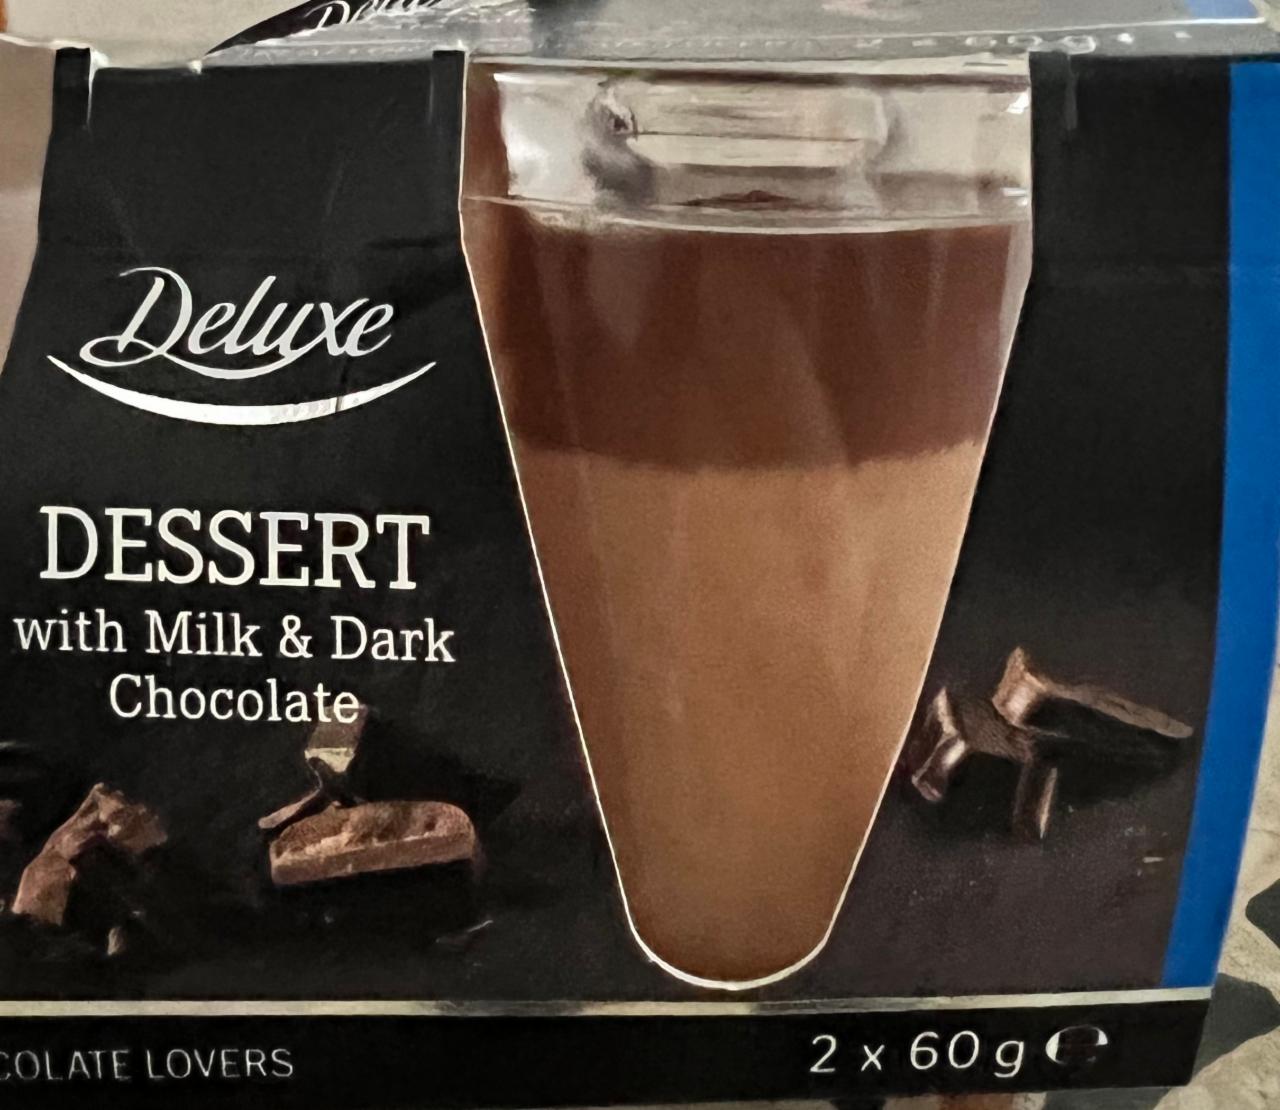 Fotografie - Dessert with Milk & Dark Chocolate Deluxe